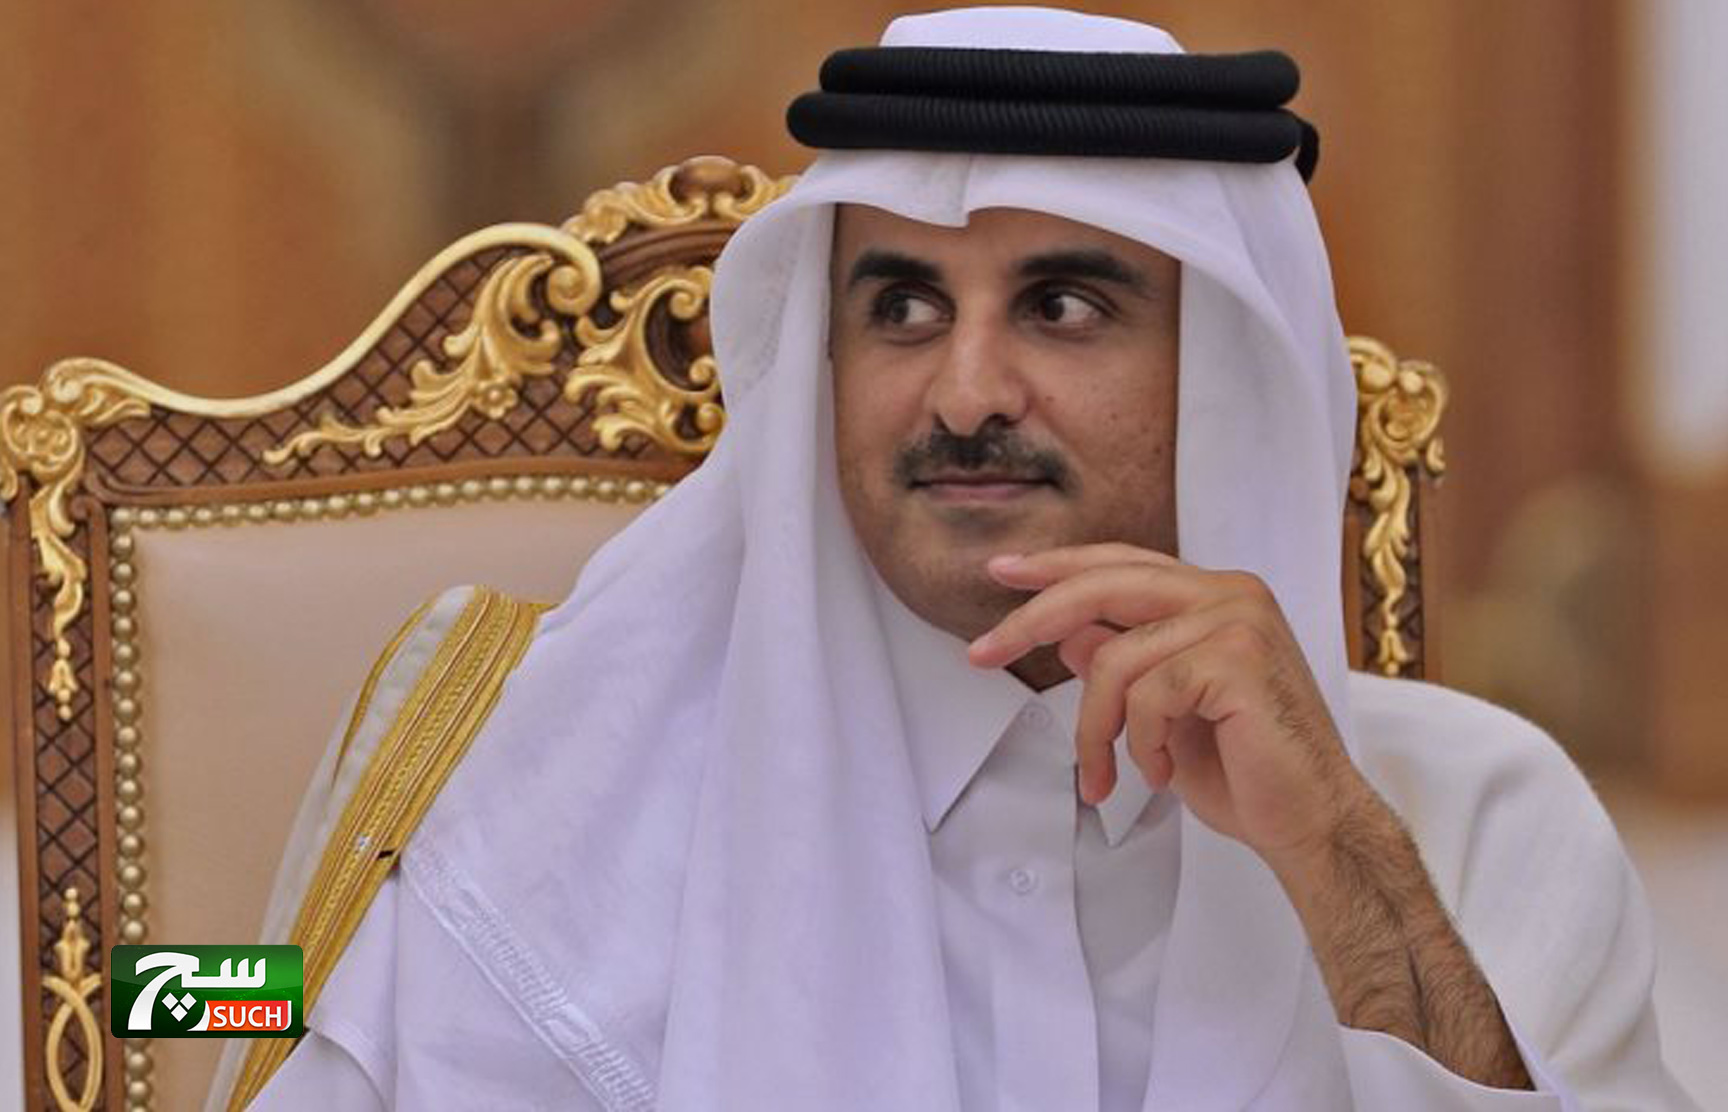 قطريليكس: حكومة قطر تفشل فى اقناع باكستان بصفقة الغاز المسال